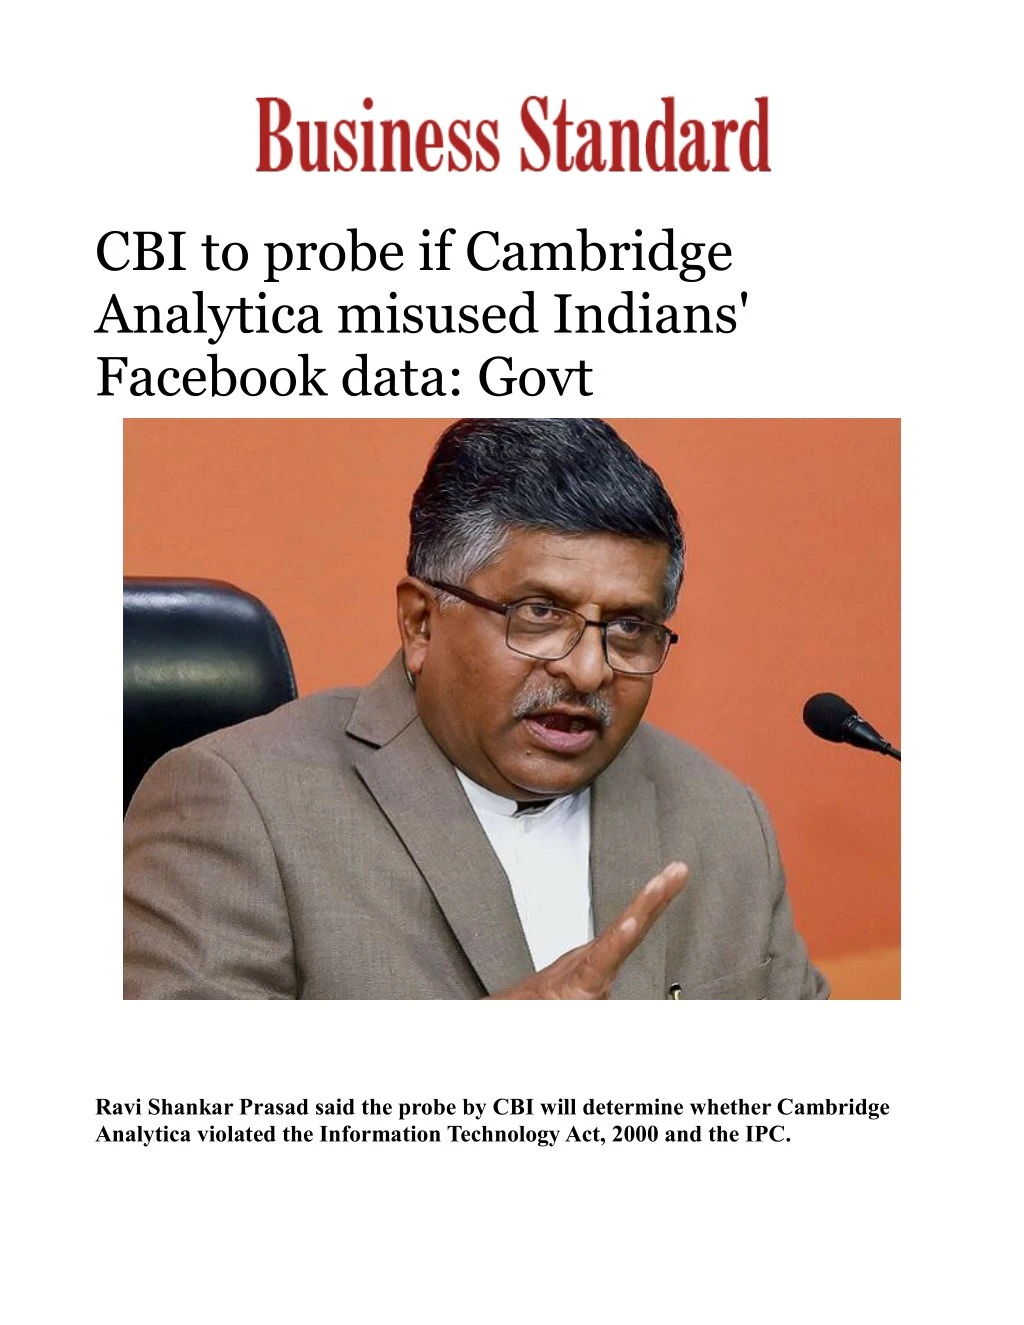 cbi to probe if cambridge analytica misused